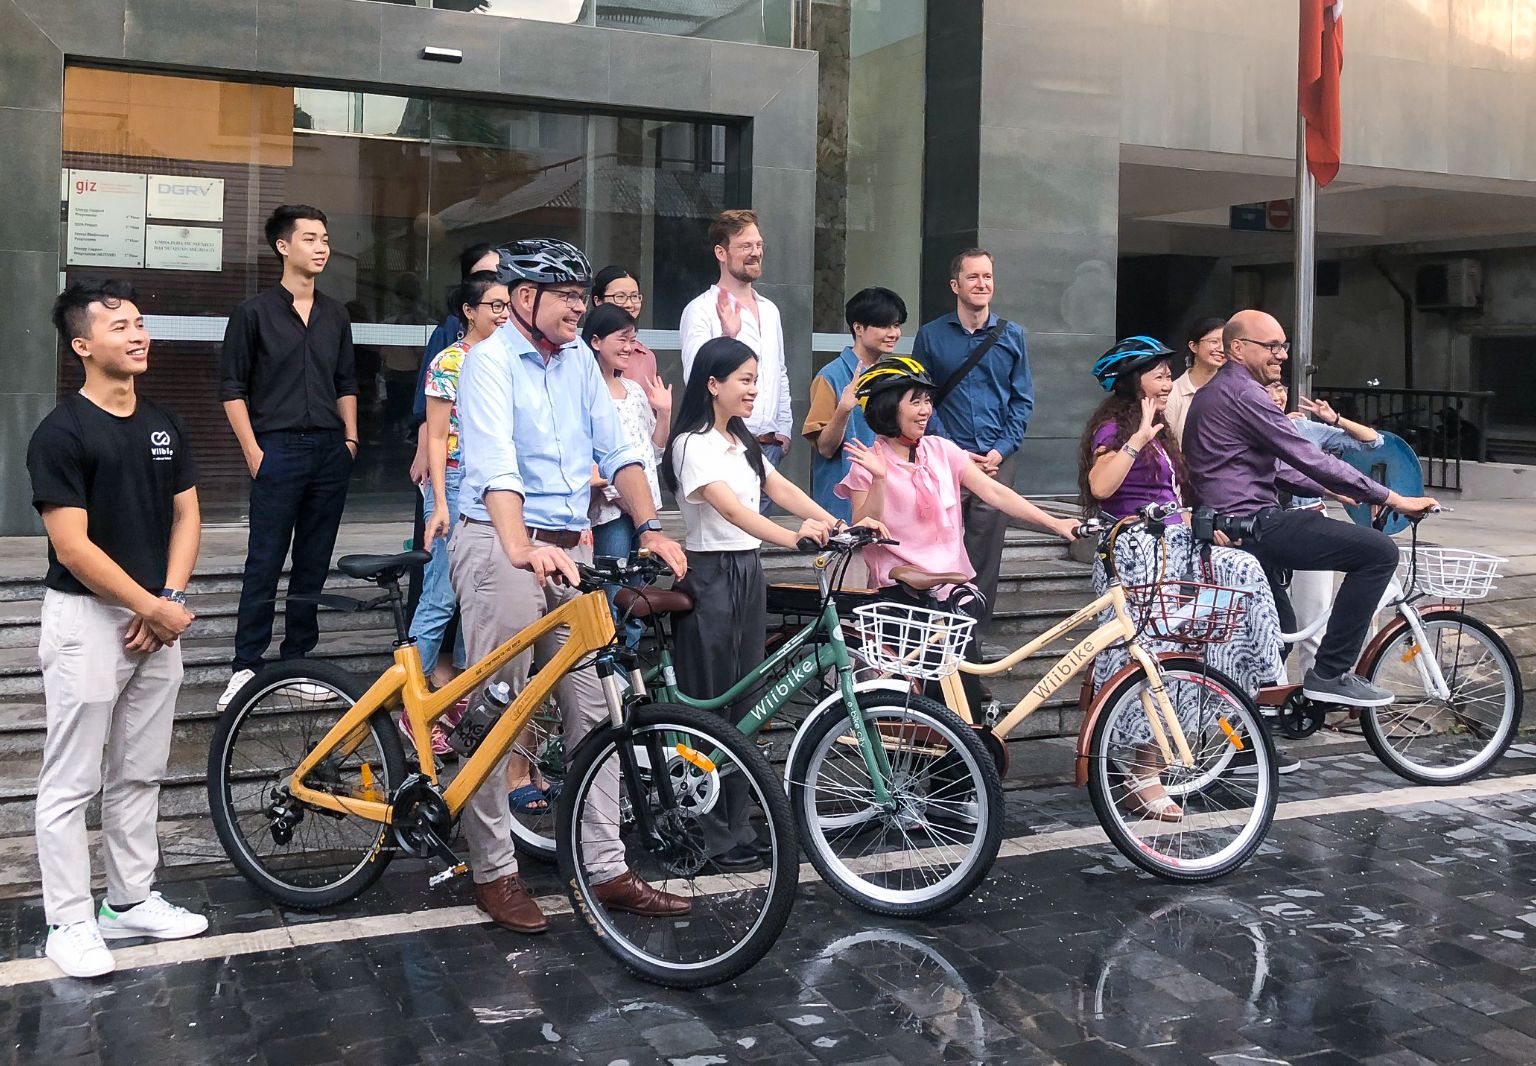 Foto: Eine Gruppe von Personen, einige von ihnen mit Fahrradhelmen, steht vor einem Gebäude mit GIZ-Logo. Alle lächeln, einige winken. Vier Personen halten ein Fahrrad in der Hand.